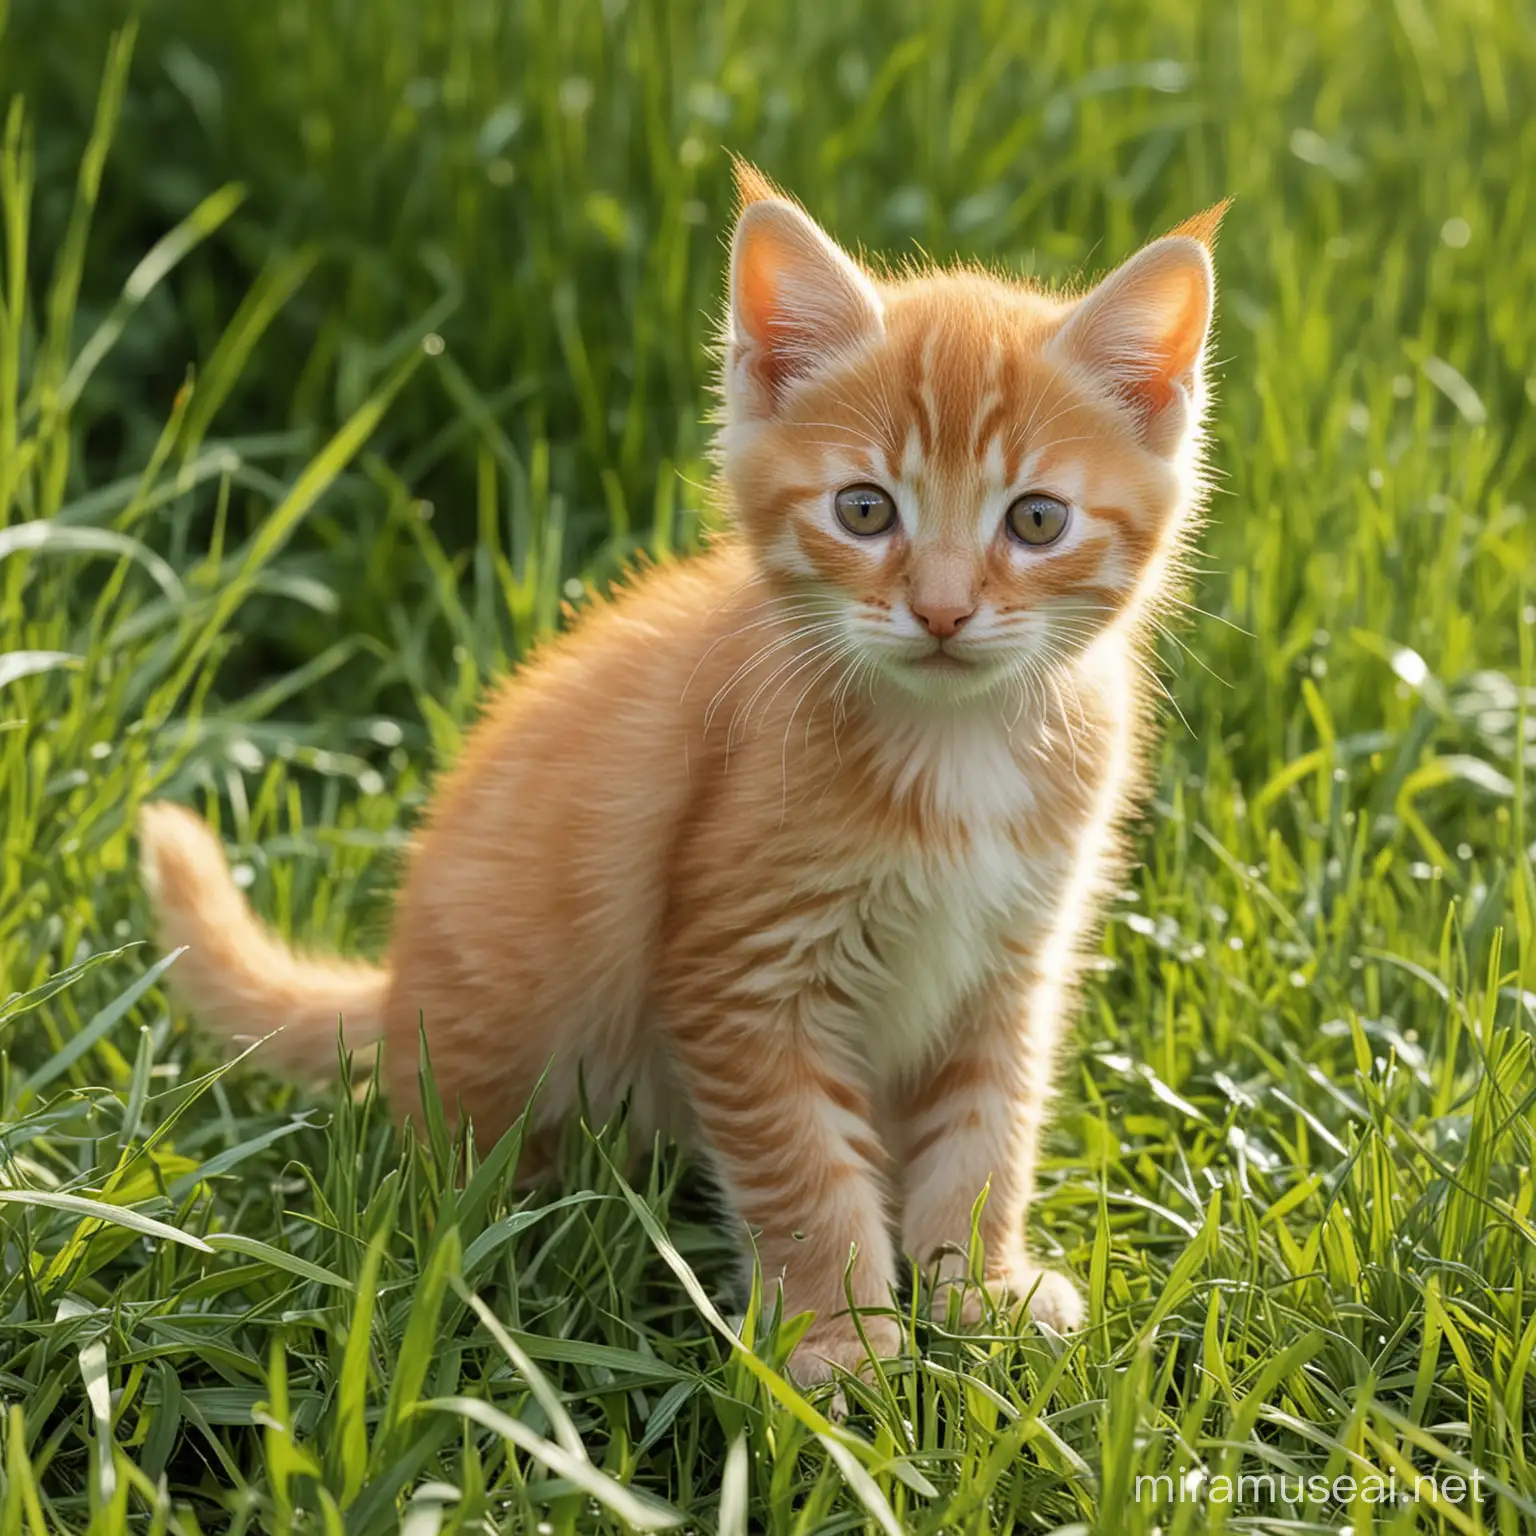 Adorable Orange Kitten Playing in Lush Green Grass